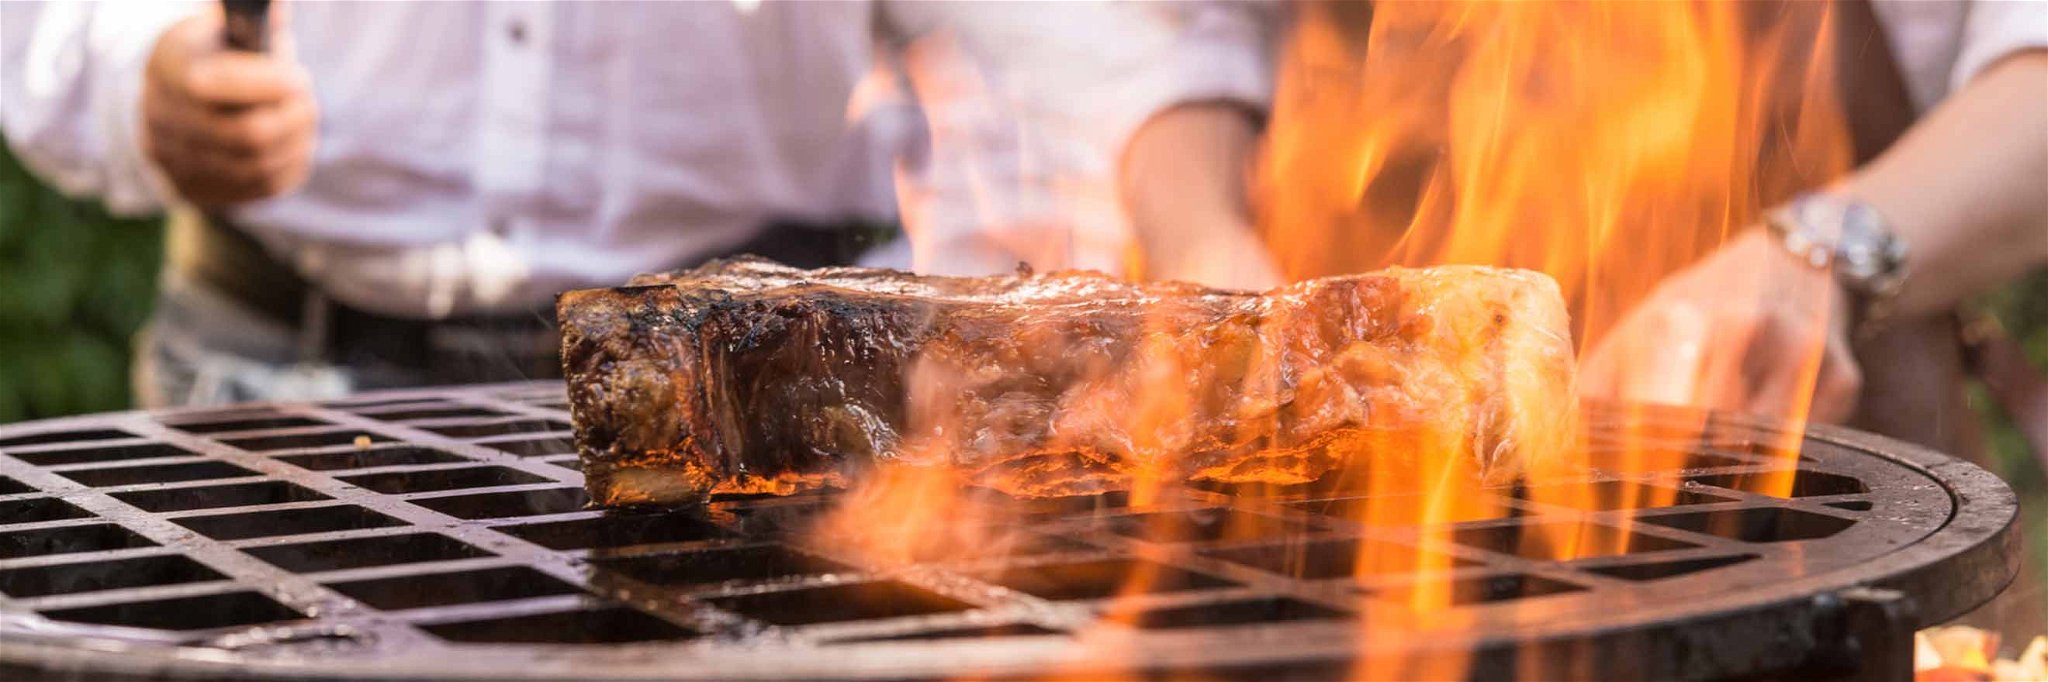 Feuer, Gusseisen und Steak – eine ansprechende Kombination.